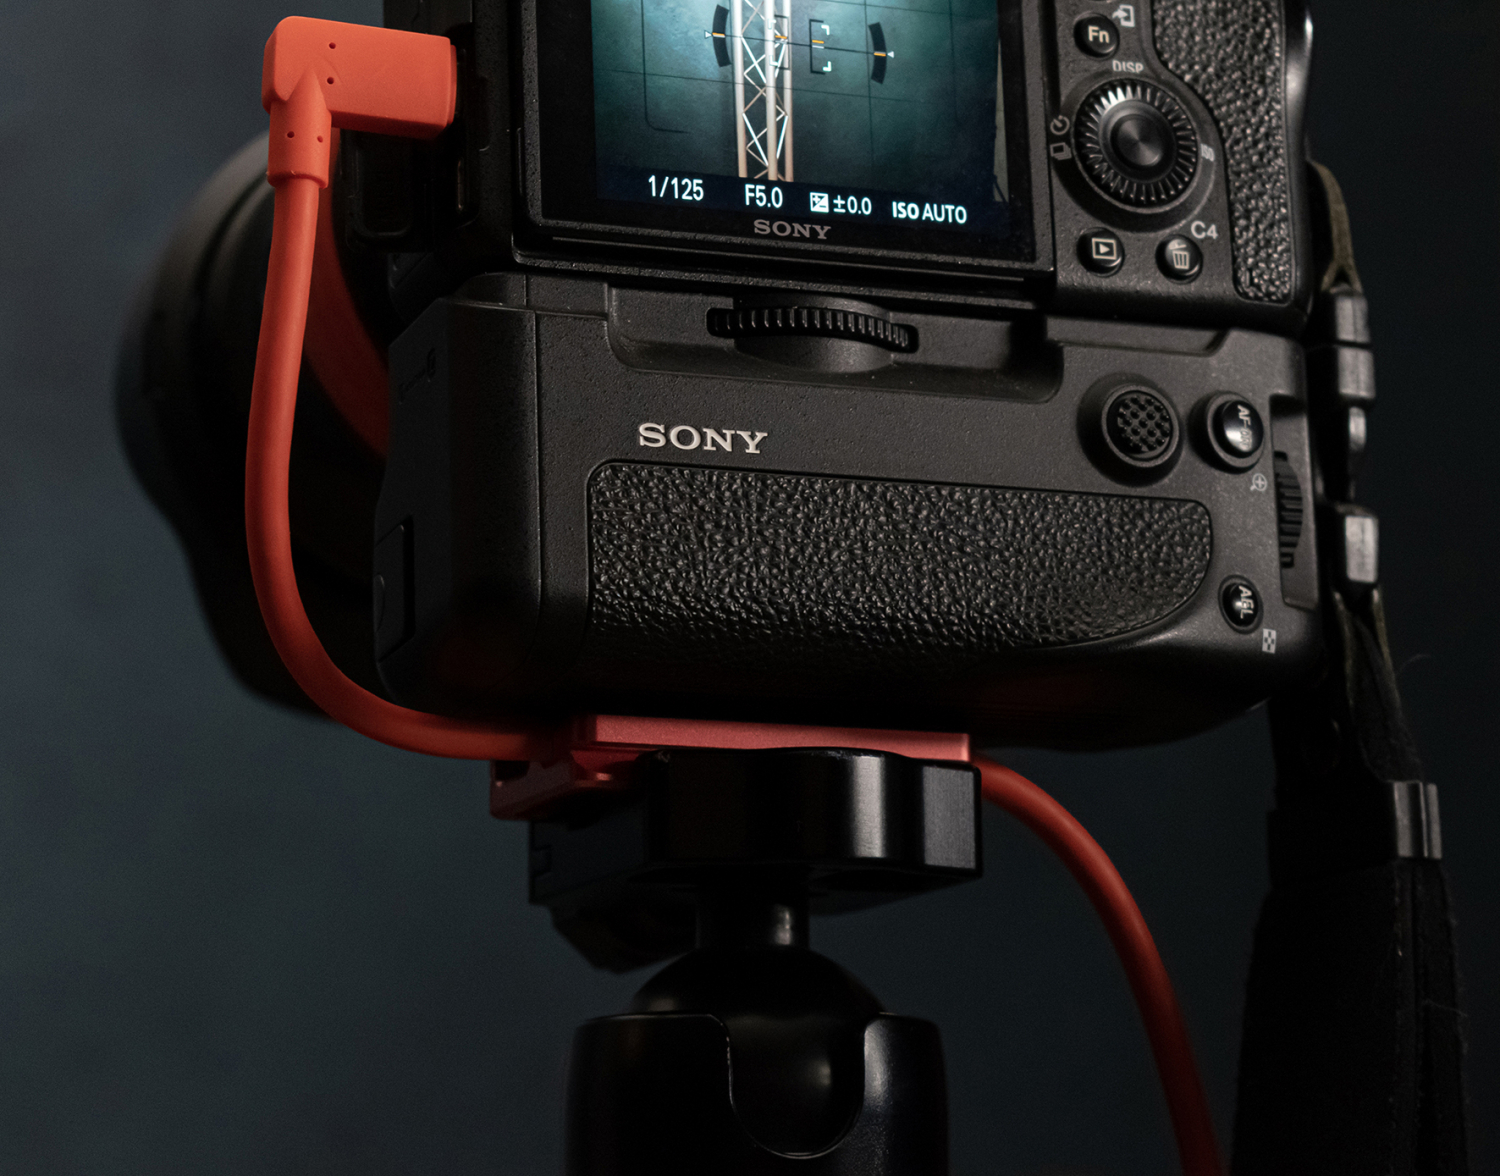 Sony camera met IQwire tetherkabel en CableBlock op statiefStudio FD sloeg in 2022 een nieuwe richting in.